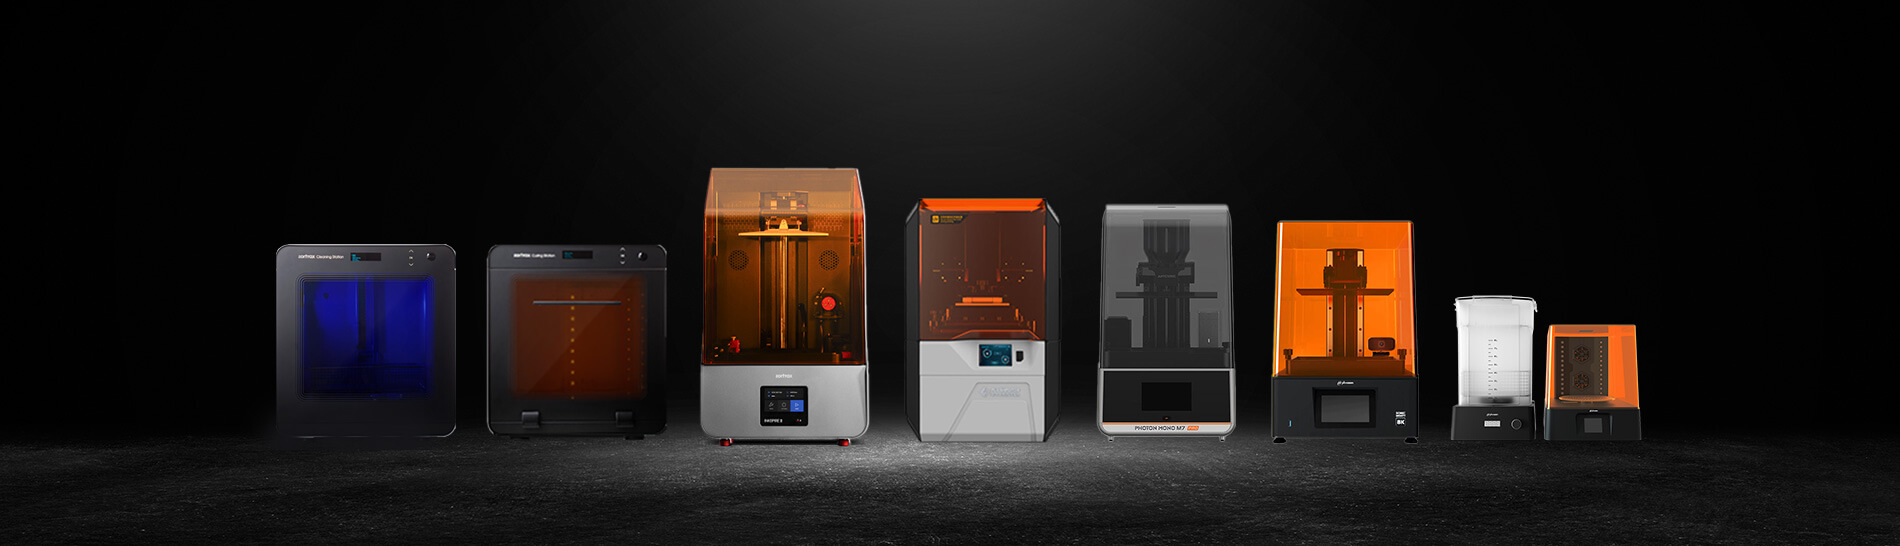 Resin 3D printers